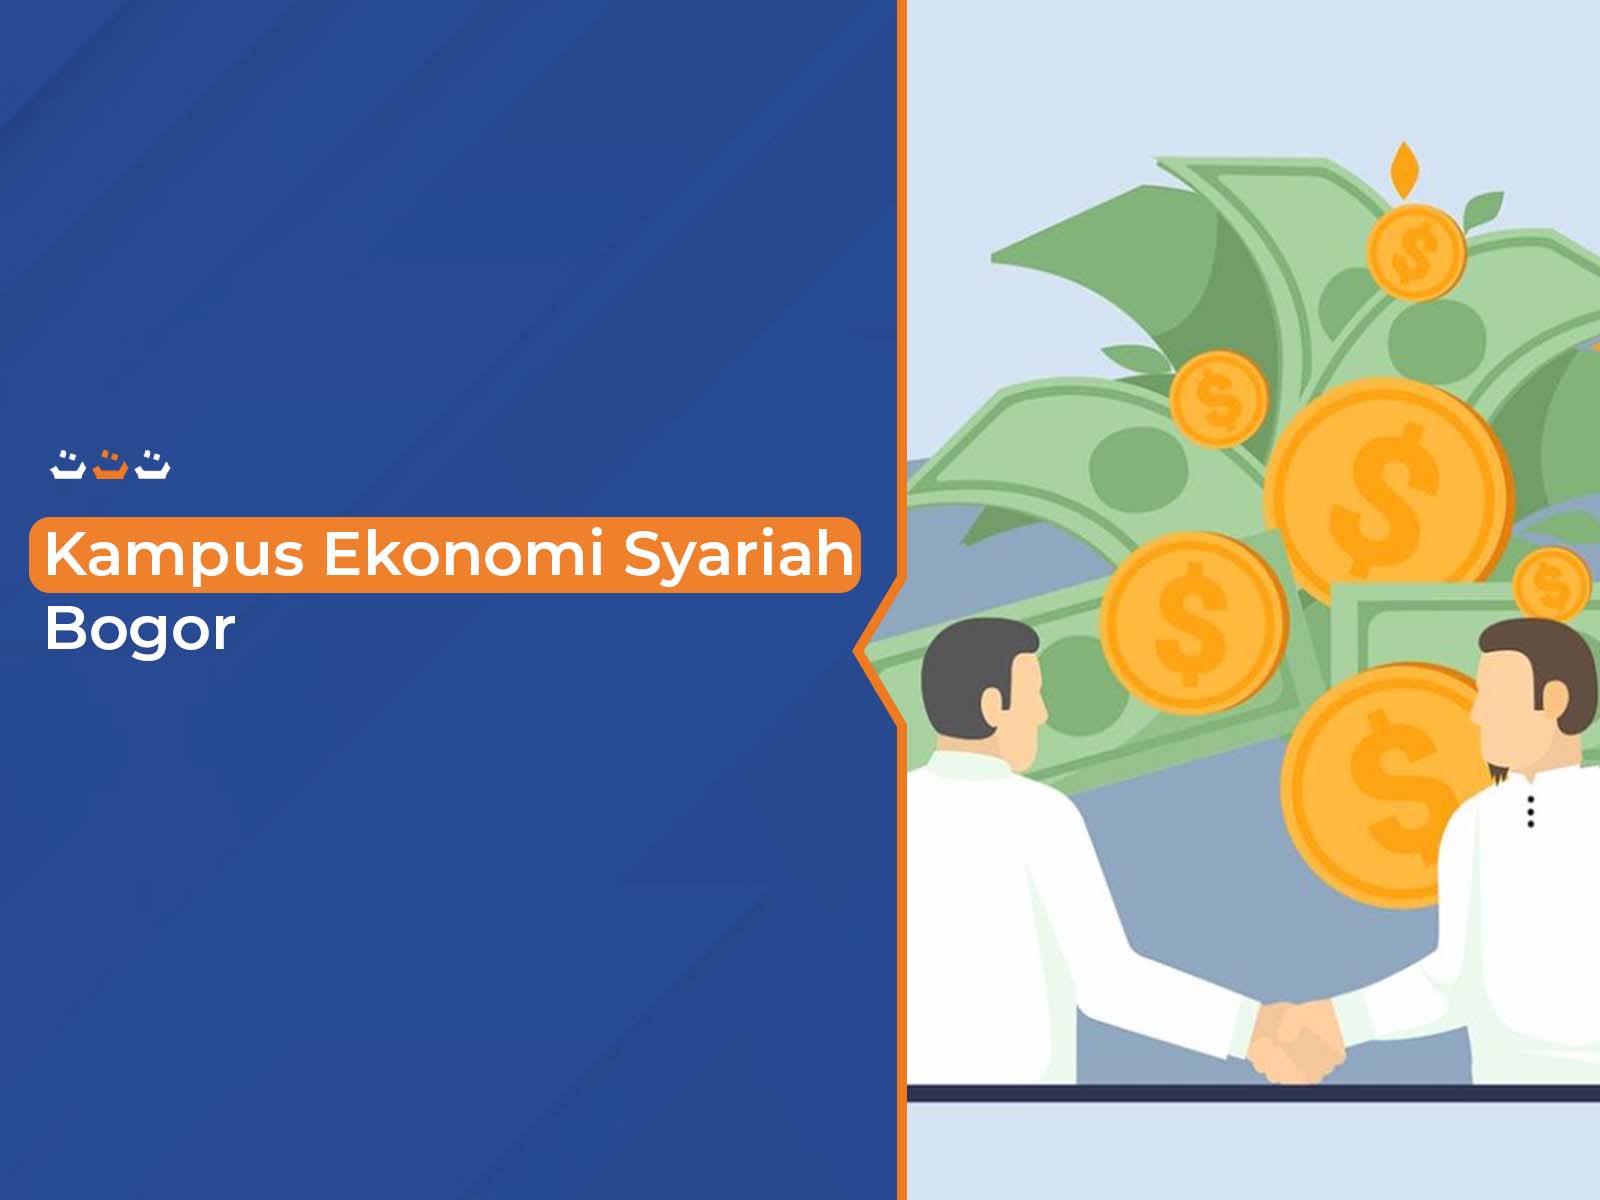 Kampus Ekonomi Syariah Bogor